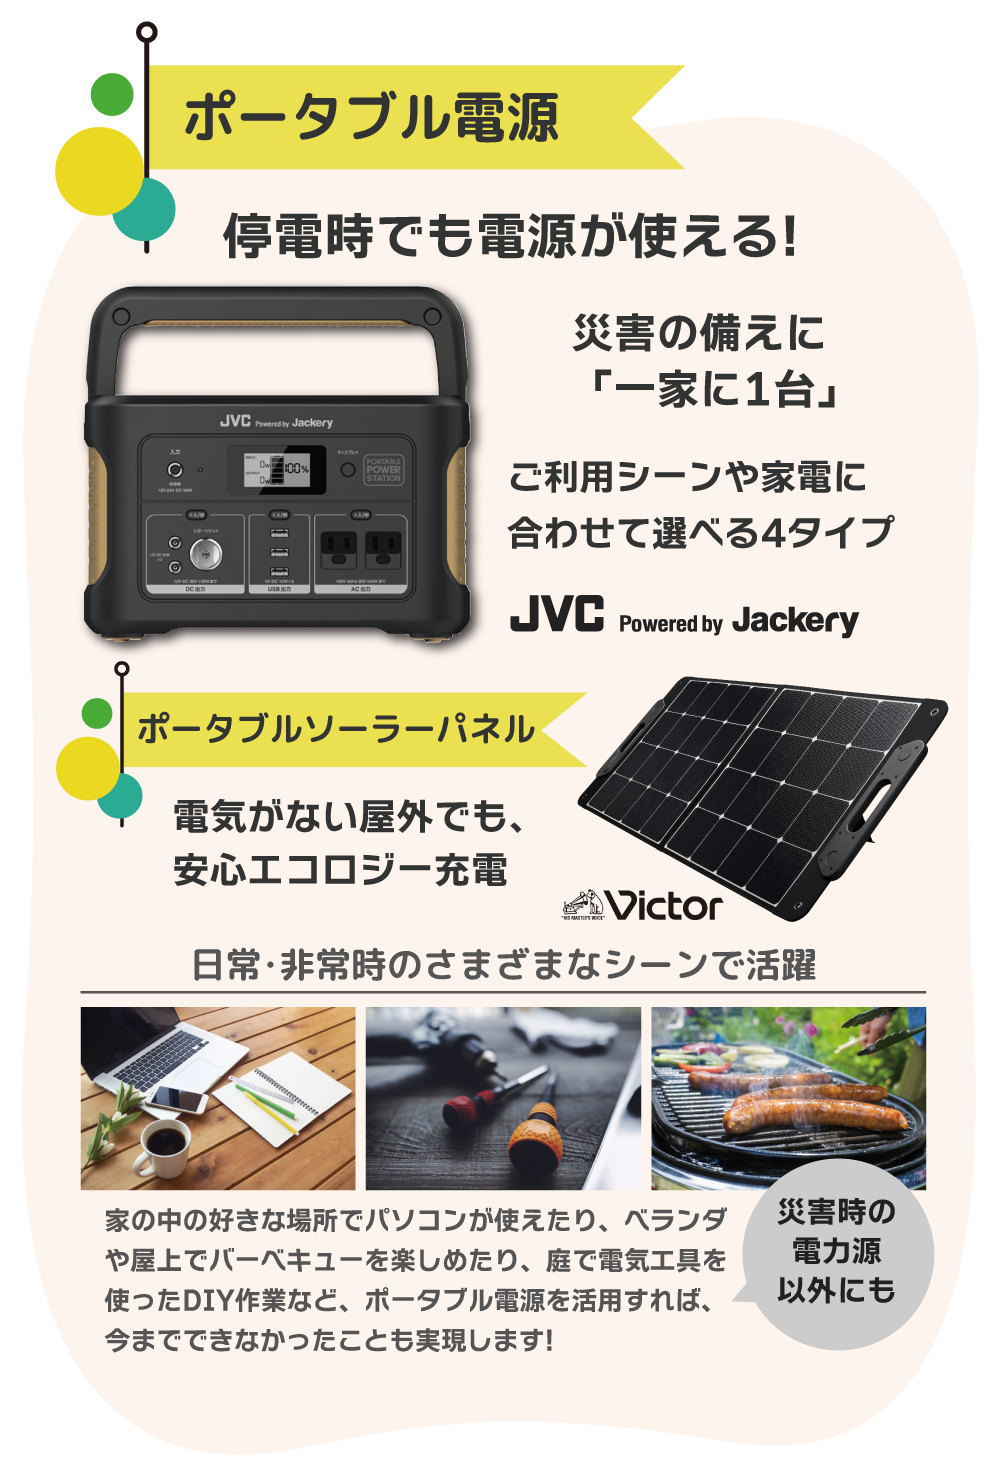 ポータブル電源 JVC powered by Jackery